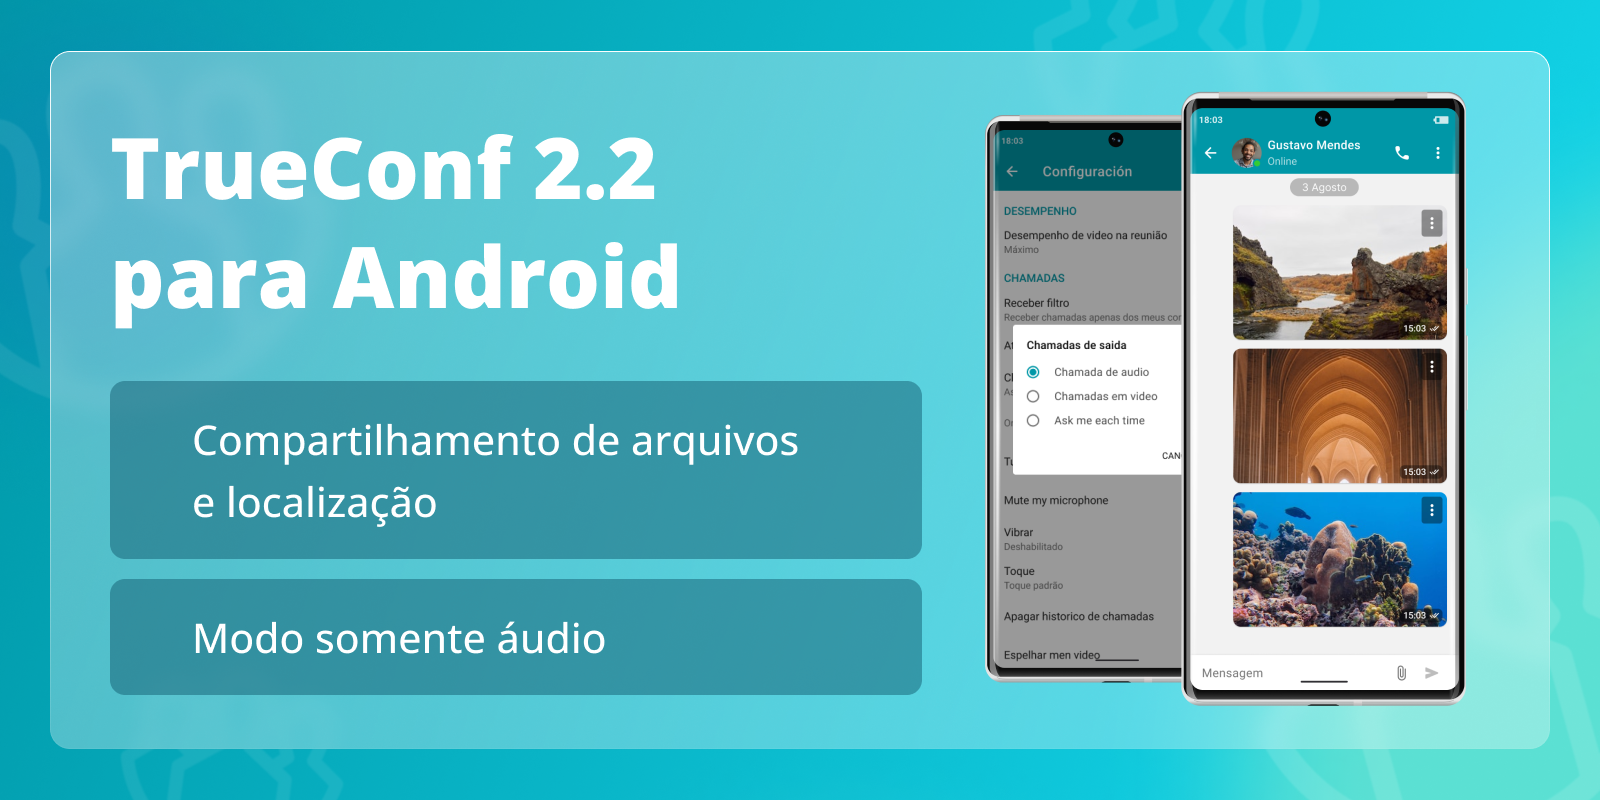 TrueConf 2.2 para Android: modo somente áudio e compartilhamento de arquivos 8